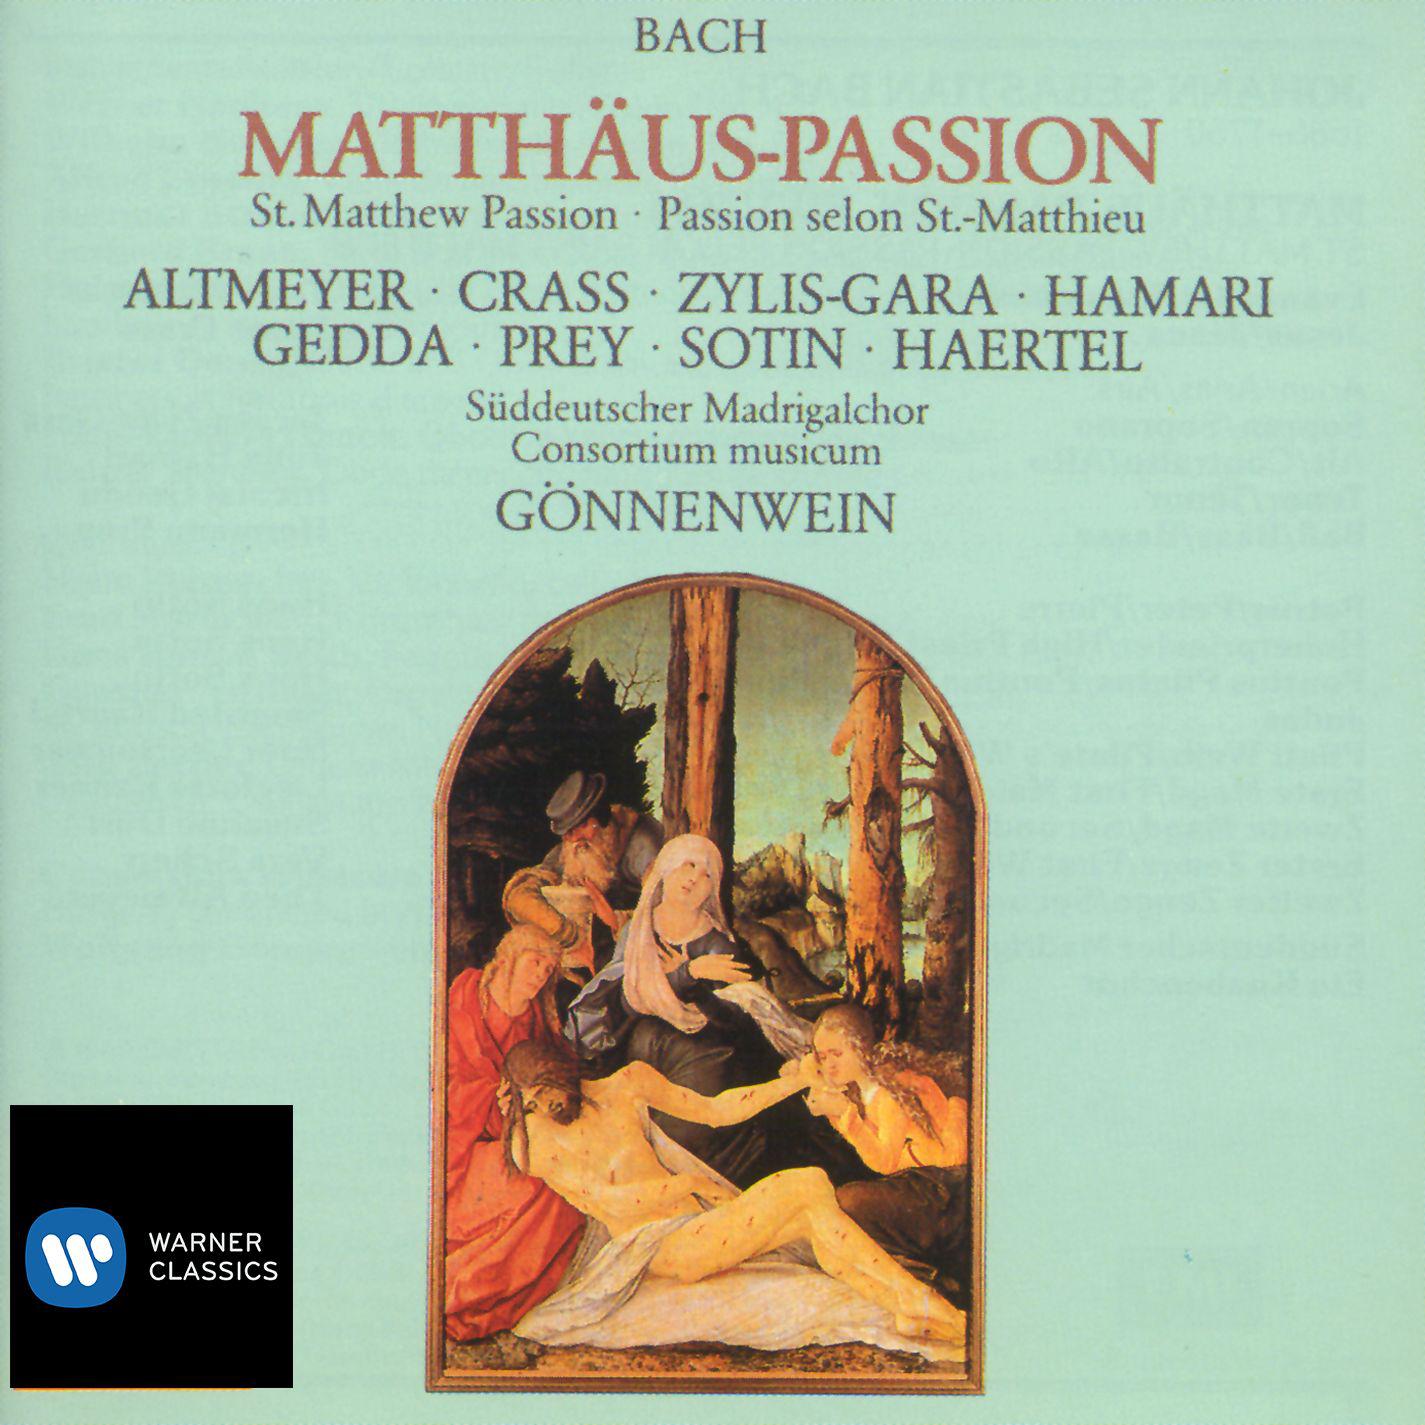 Consortium Musicum - Matthäus-Passion, BWV 244, Pt. 2:No. 42, Aria. 